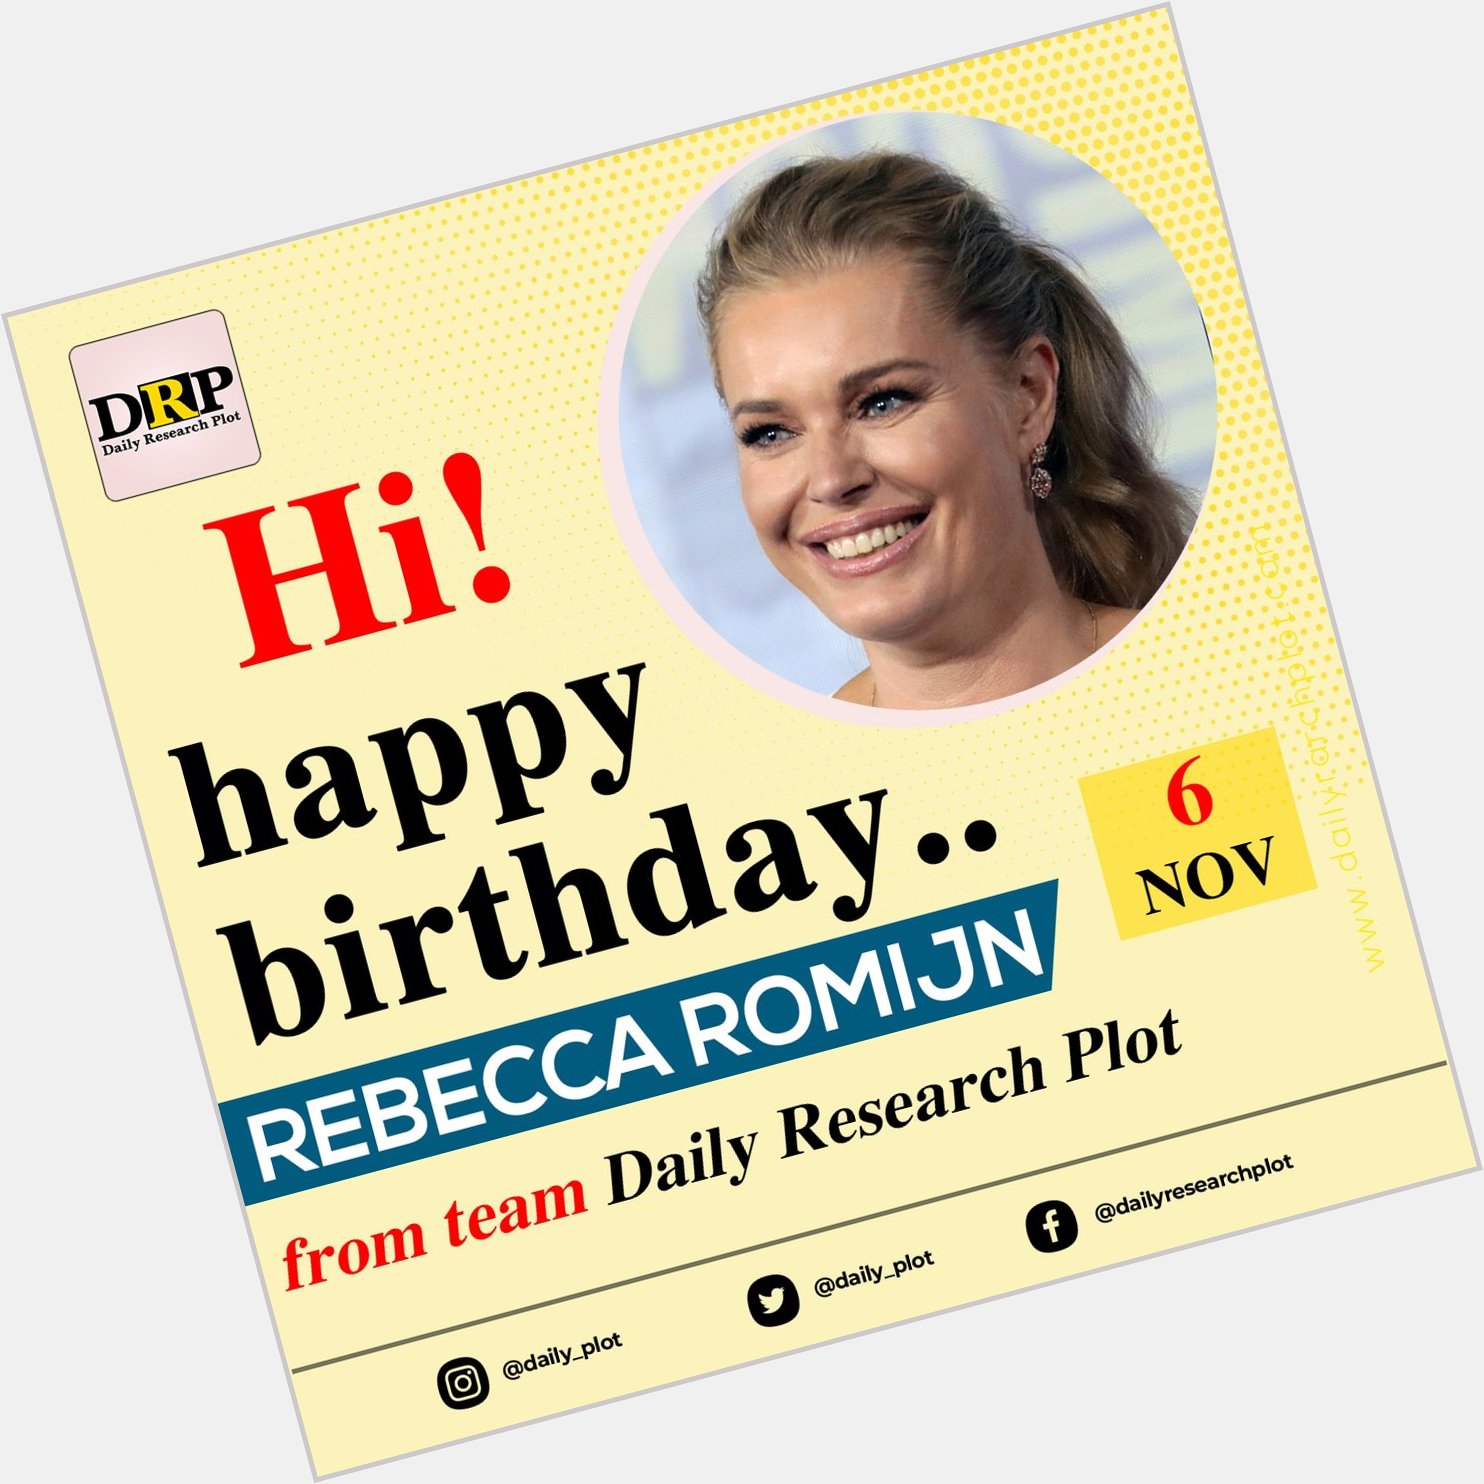 Happy Birthday...
Rebecca Romijn    